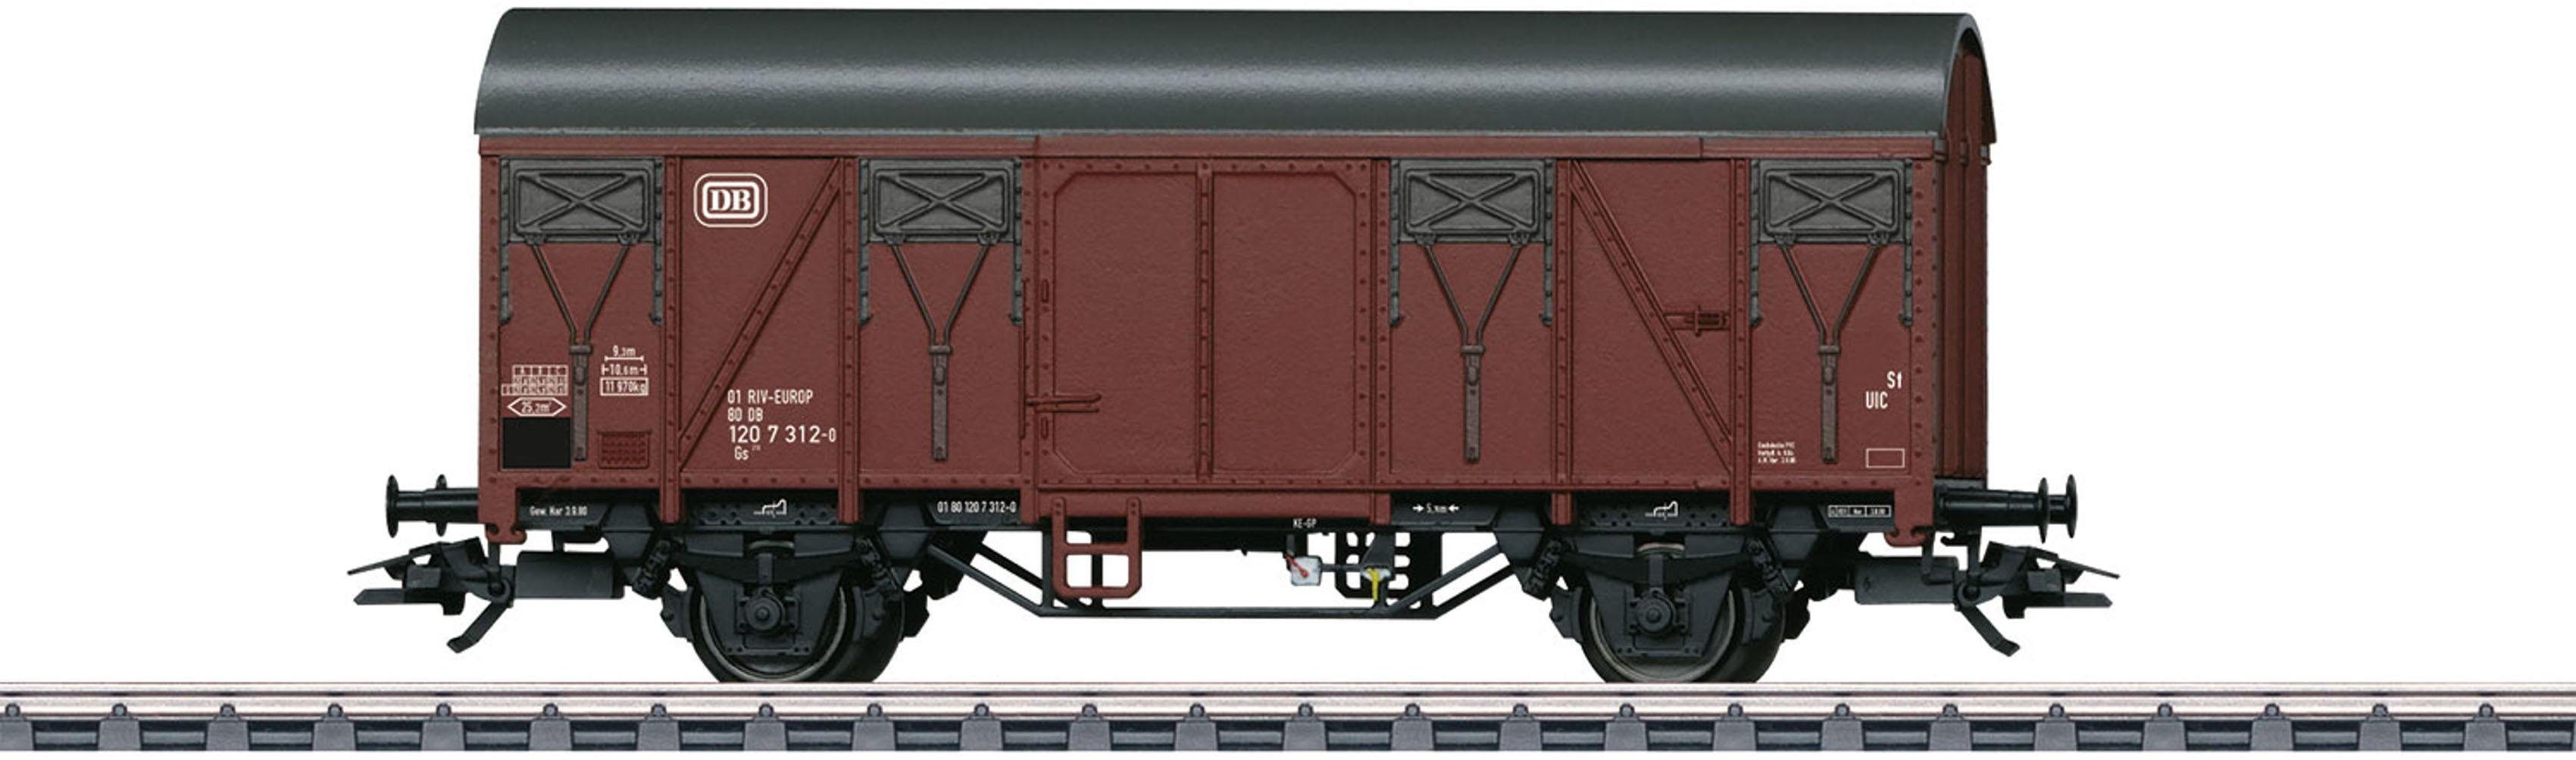 Märklin Güterwagen Gedeckter Güterwagen Gs 210, D - 44500, Spur H0